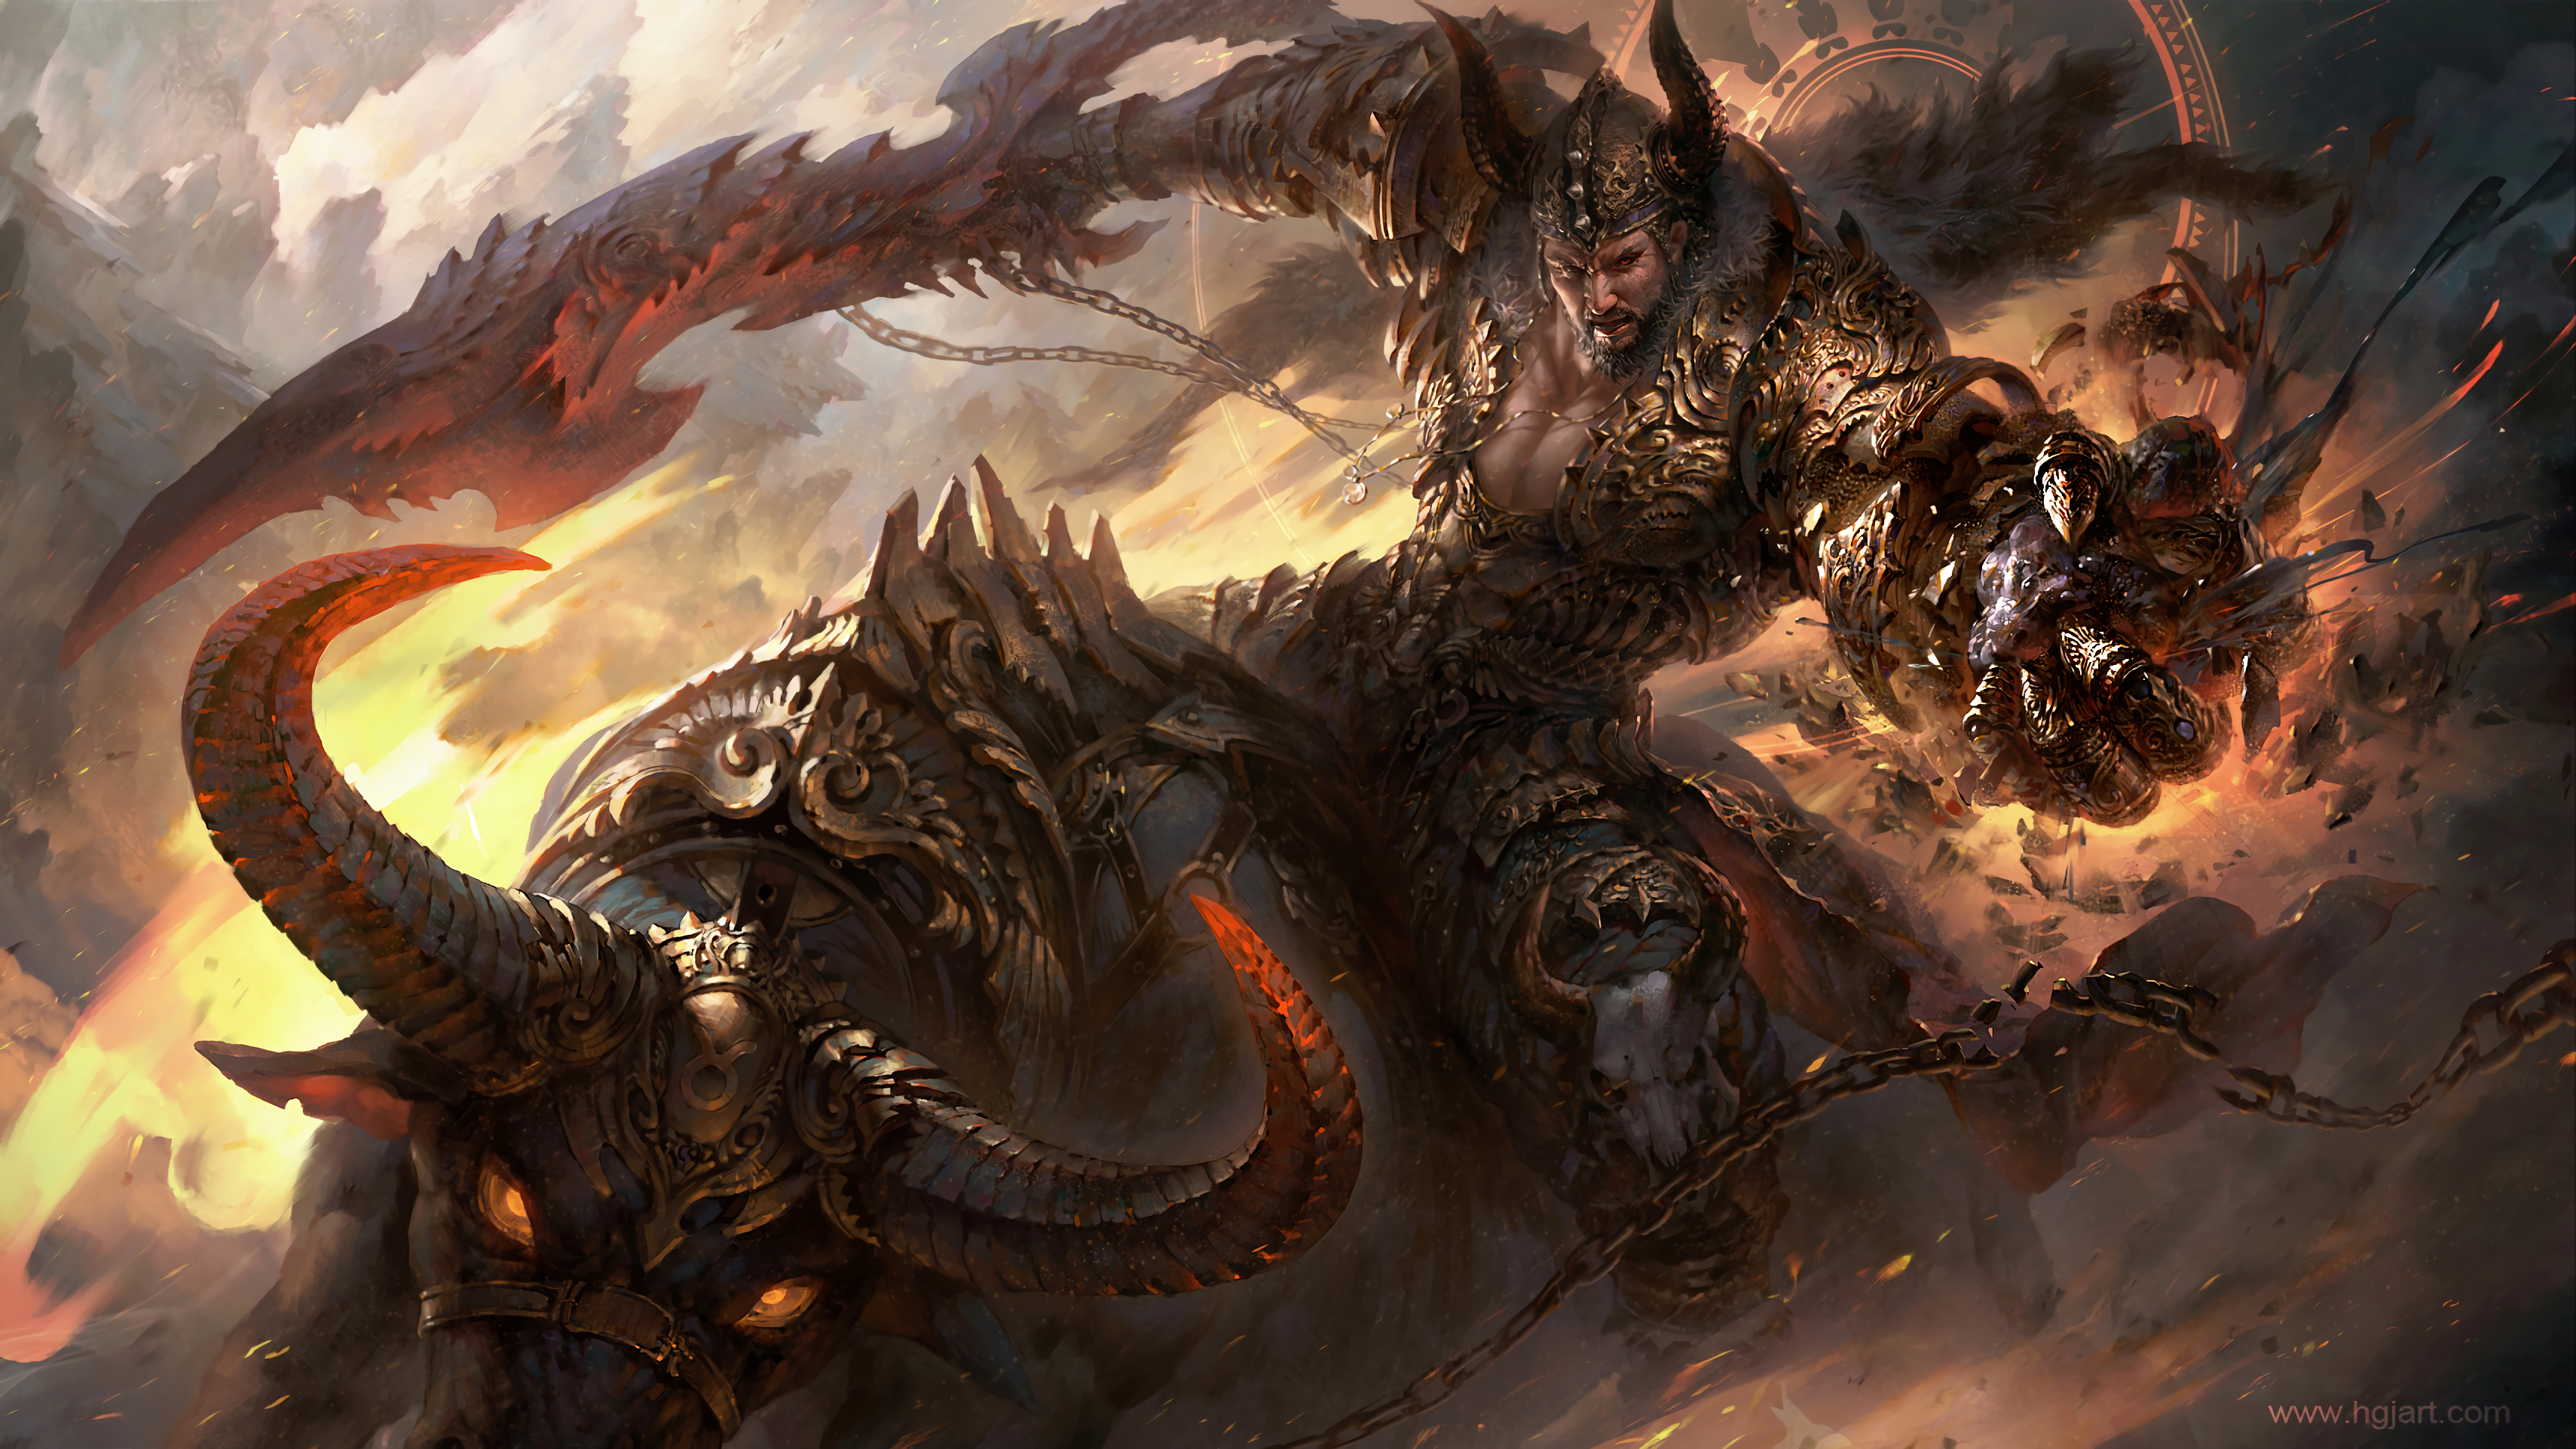 Бесплатное фото Картинка из игры Warhammer Fantasy